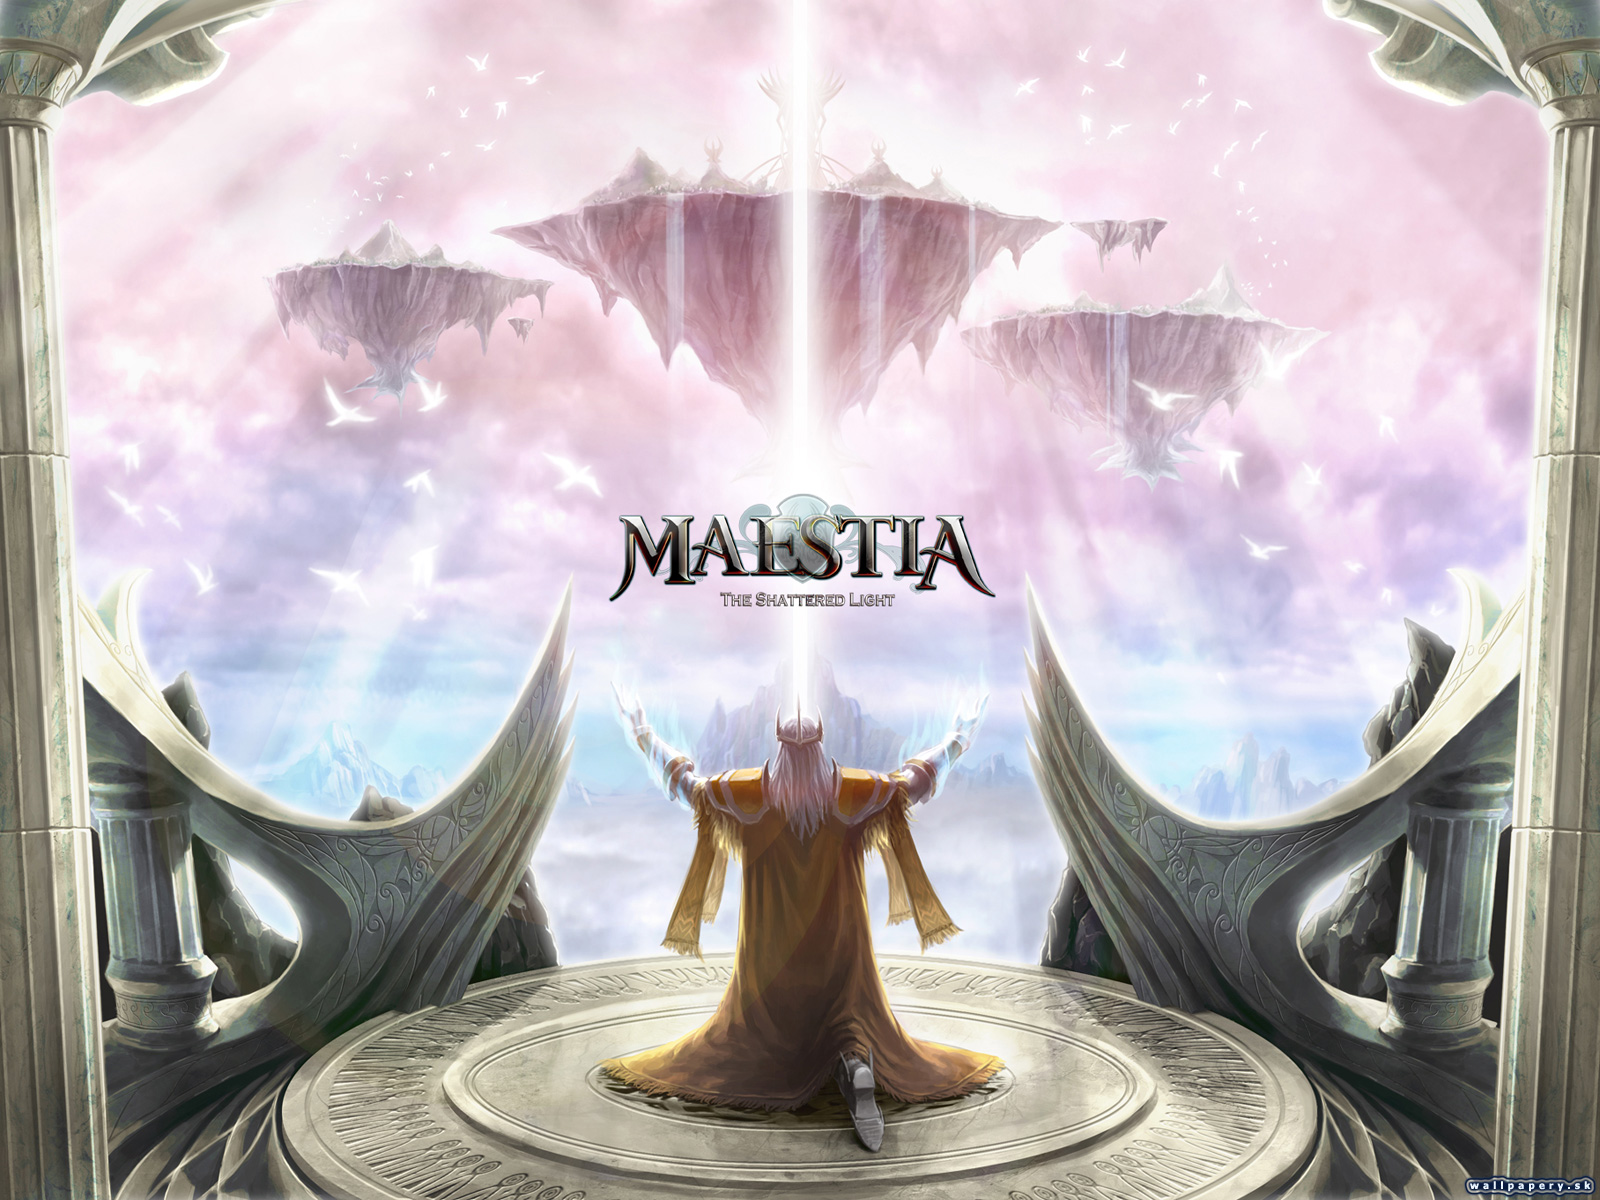 Maestia: The Shattered Light - wallpaper 5